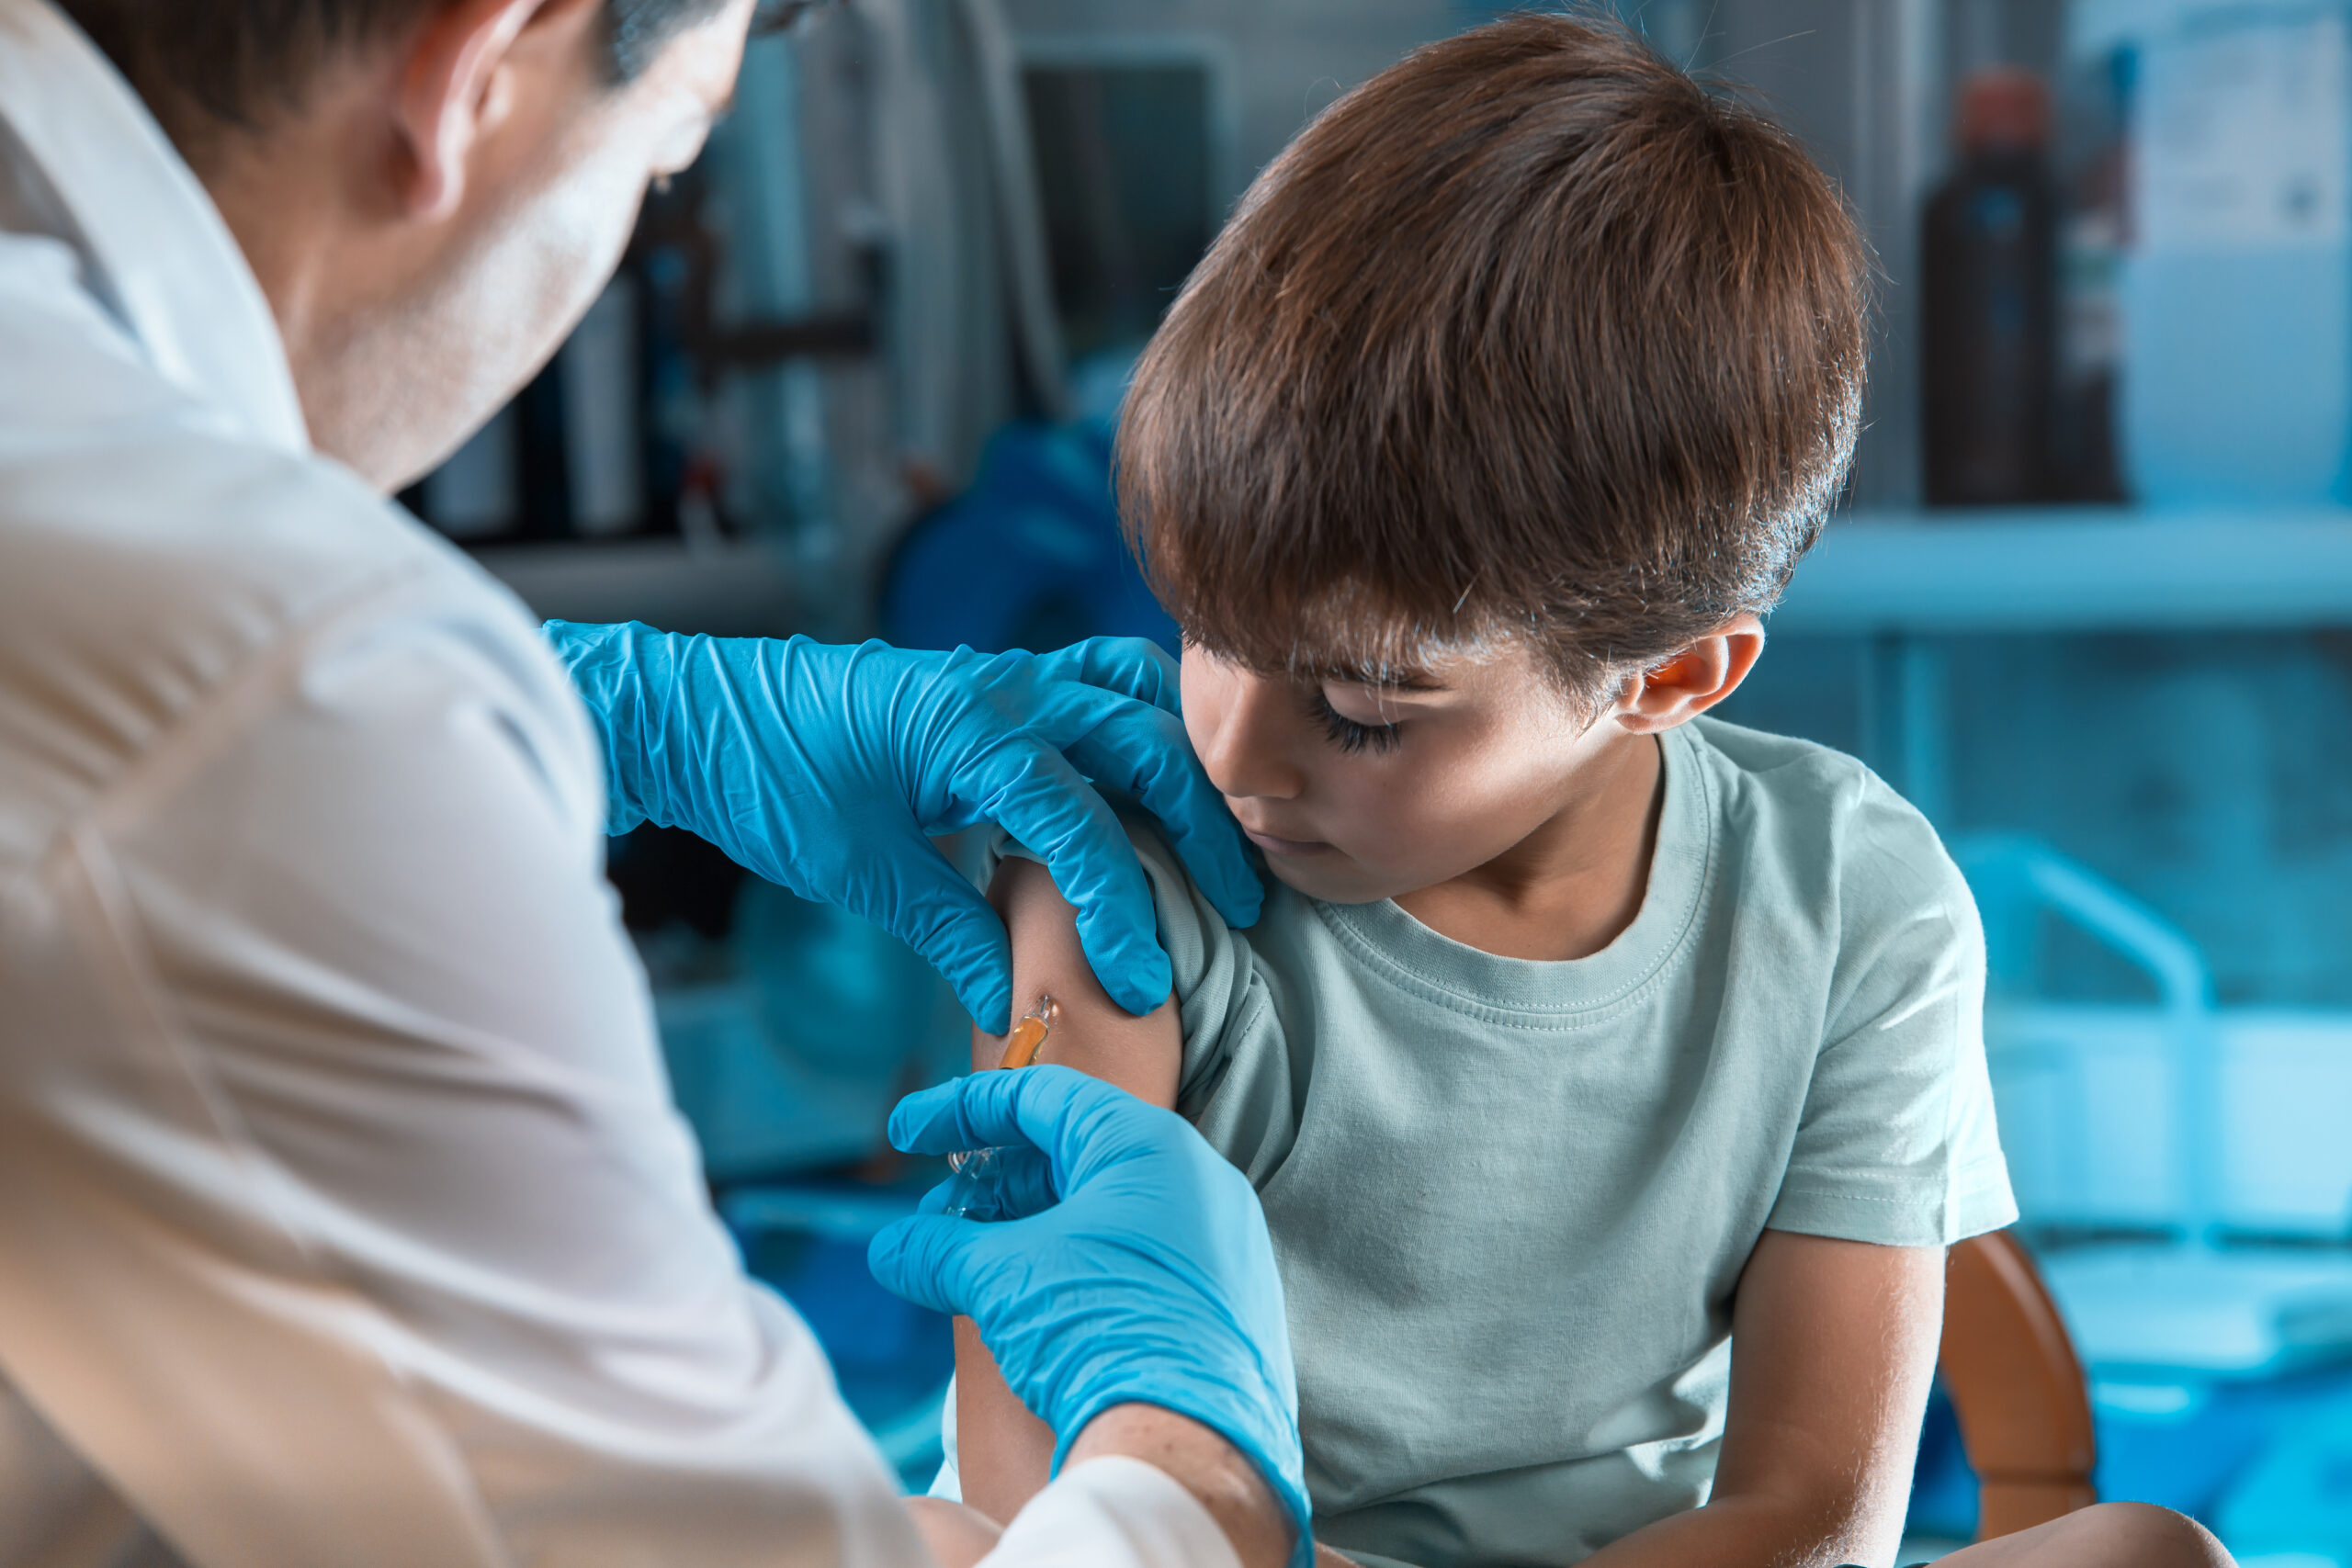 COVID-19 pediatric vaccine for children ages 5-11